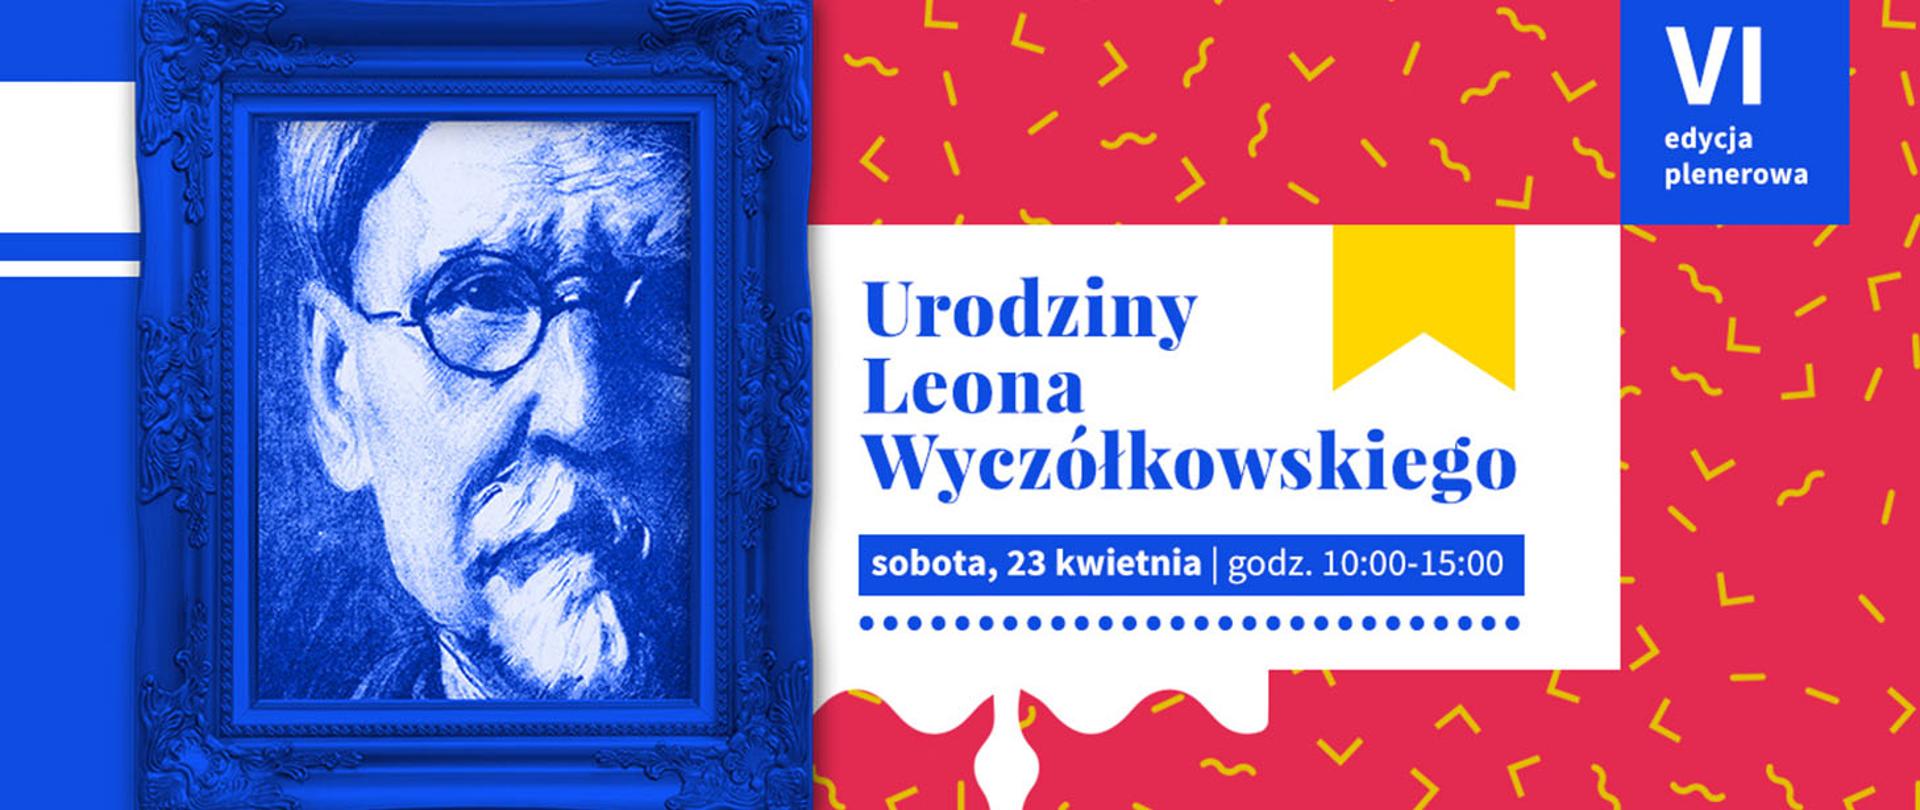 portret Wyczółkowskiego w niebieskiej ramie i na wzorzystym tle napis urodziny Leona Wyczółkowskiego